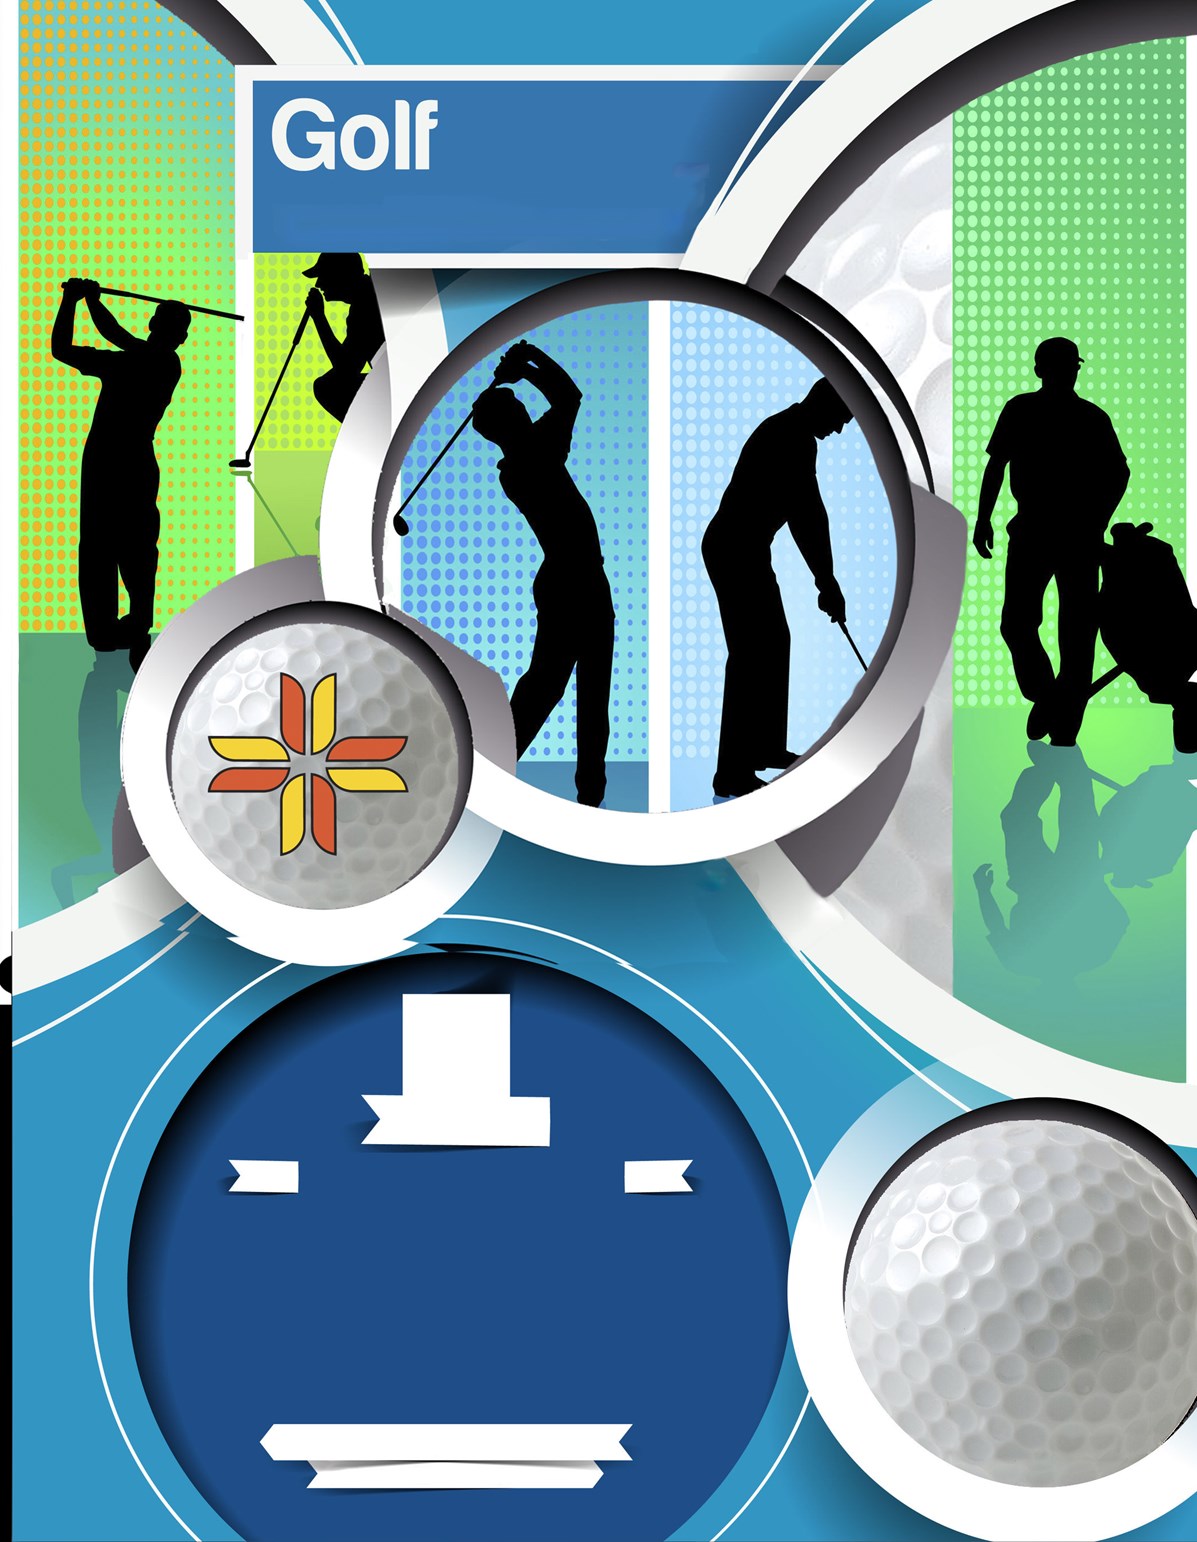 Depuis les 15 dernières années, la Fondation du Séminaire de Sherbrooke tient son tournoi de golf annuel, une activité de financement qui réunit 144 golfeurs (formule Vegas), dans une ambiance de